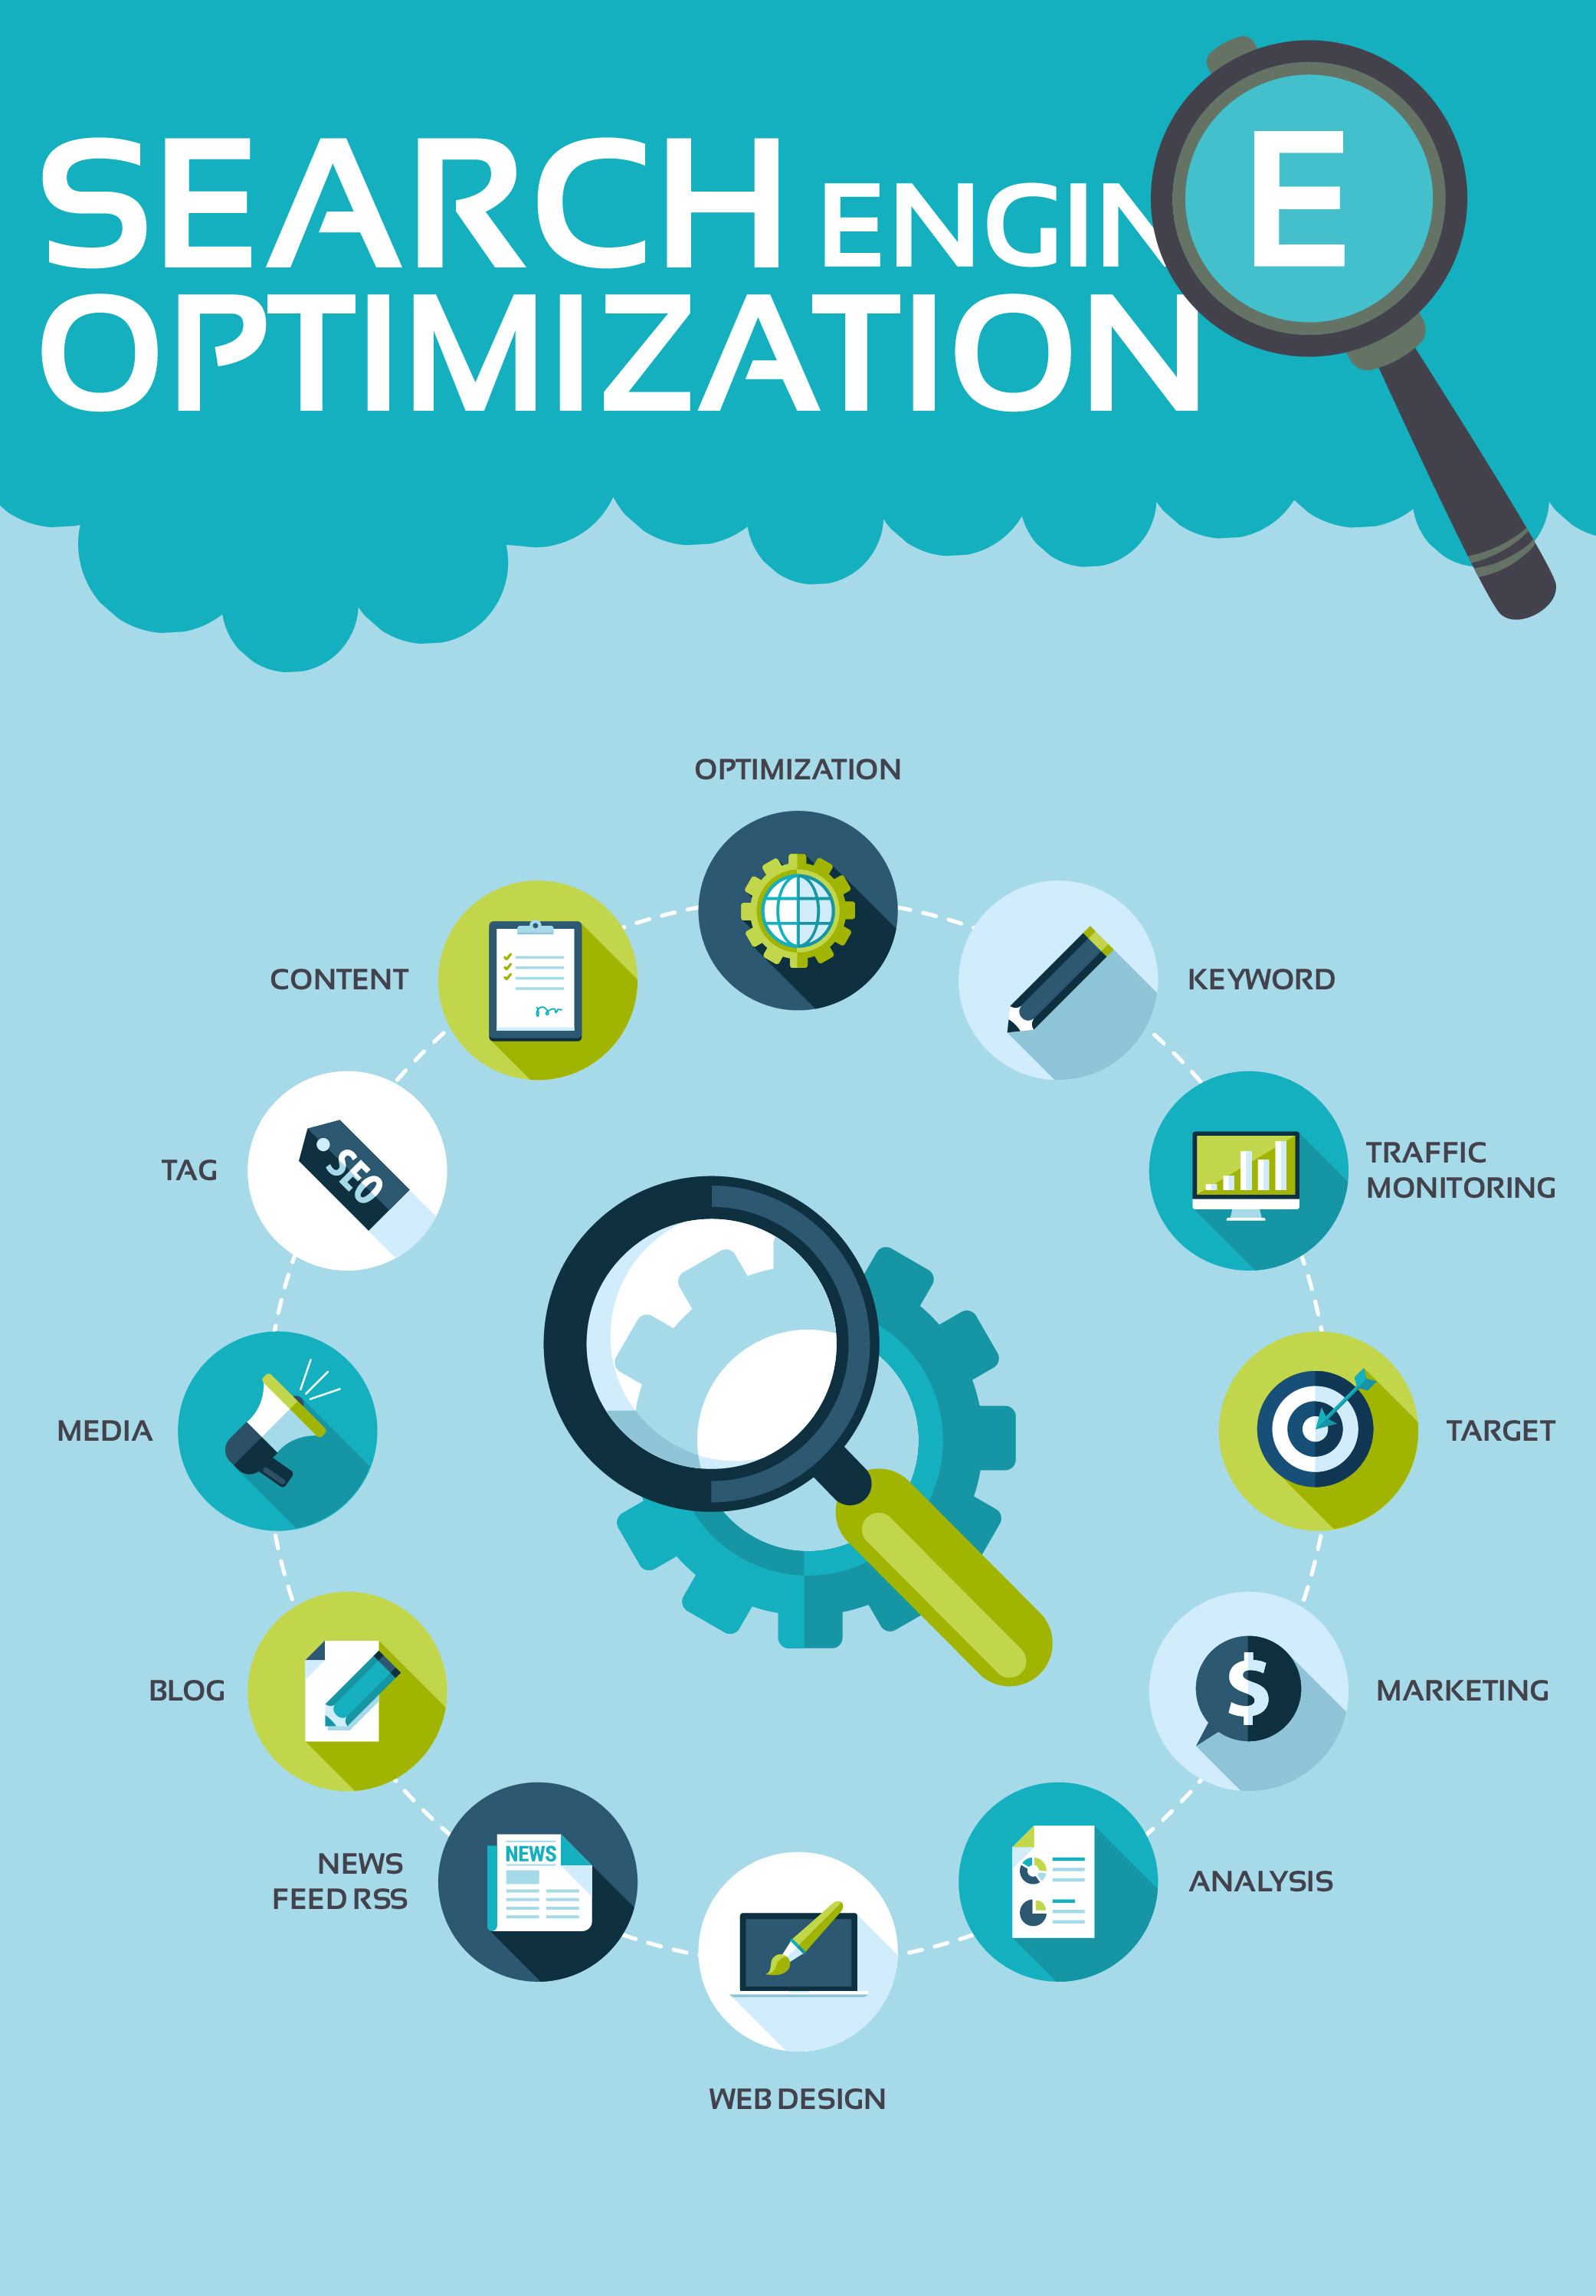 Search Engine Optimization Process Visually